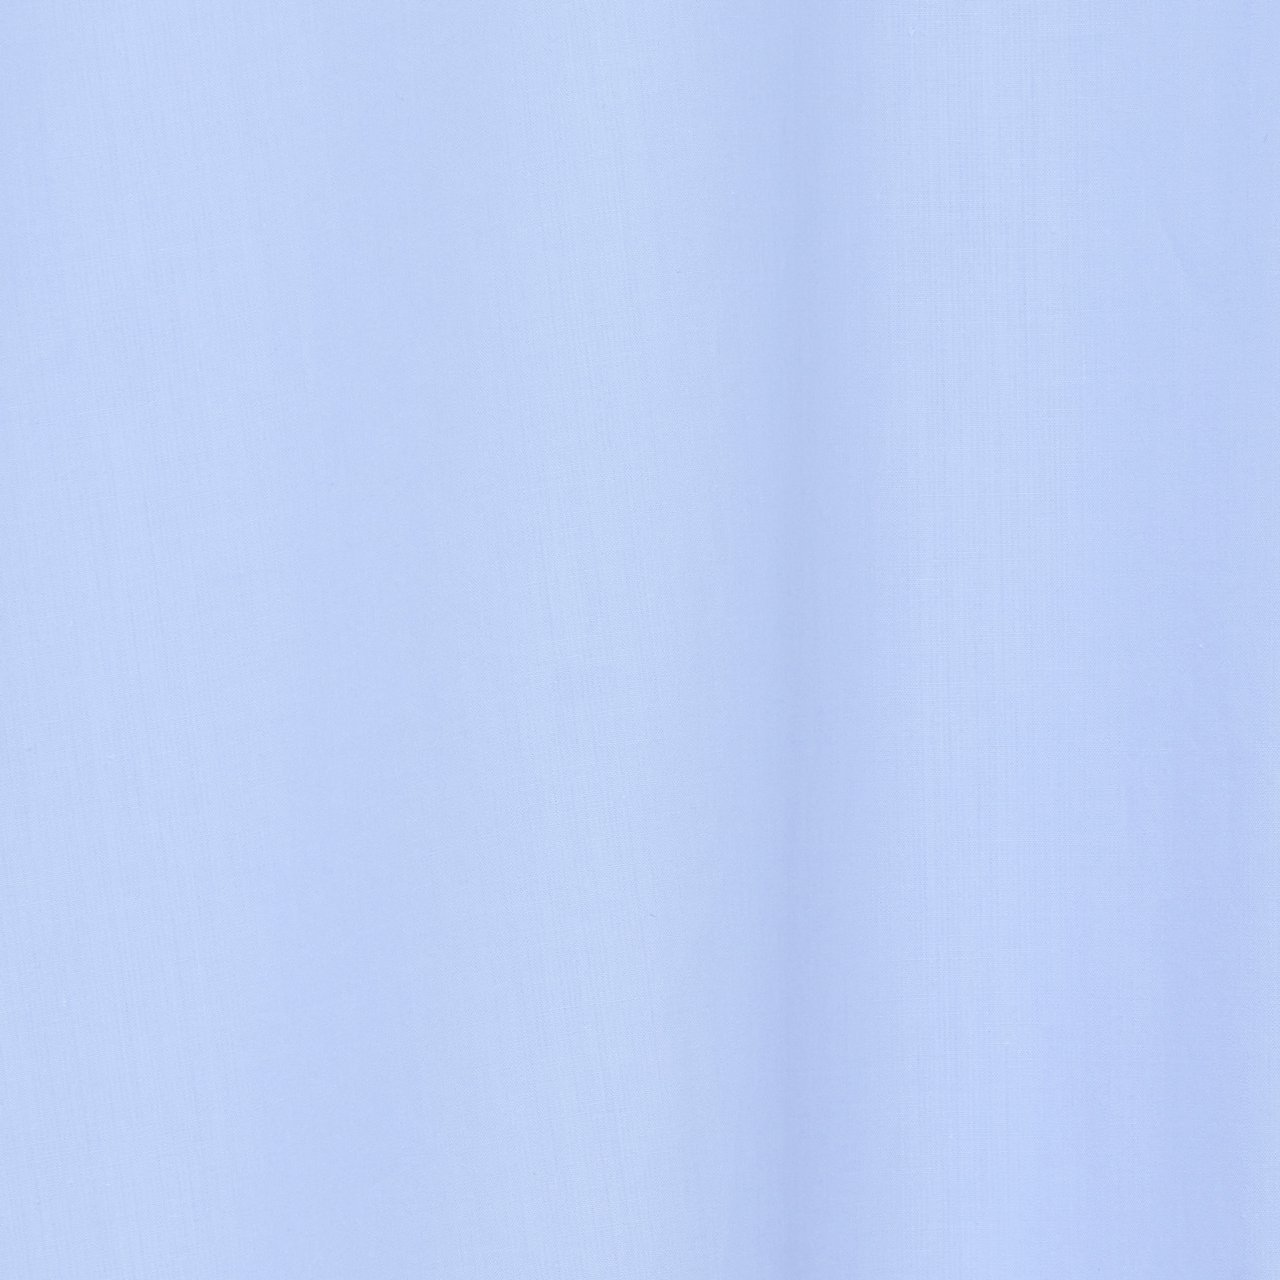 MARKAWARE (マーカウェア) 24SS/春夏
COMFORT FIT SHIRT SAX BLUE
コンフォートフィットシャツ
長袖シャツ
A24A-09SH01C